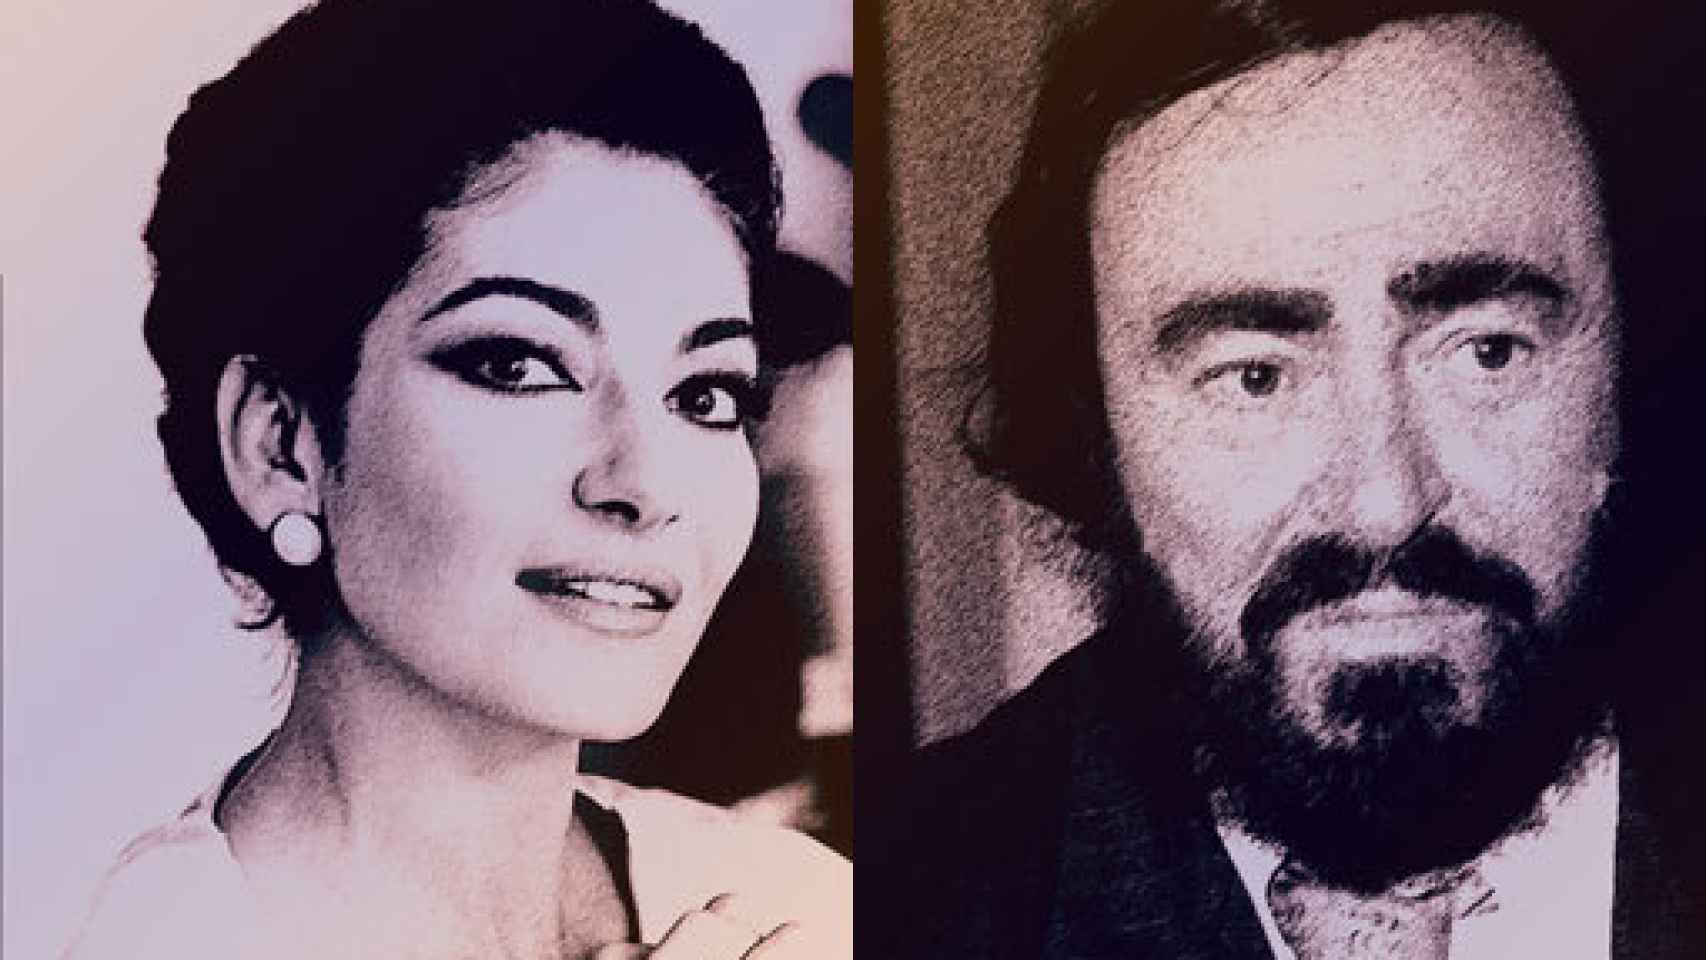 Image: Maria Callas y Pavarotti, divos de drama y voz